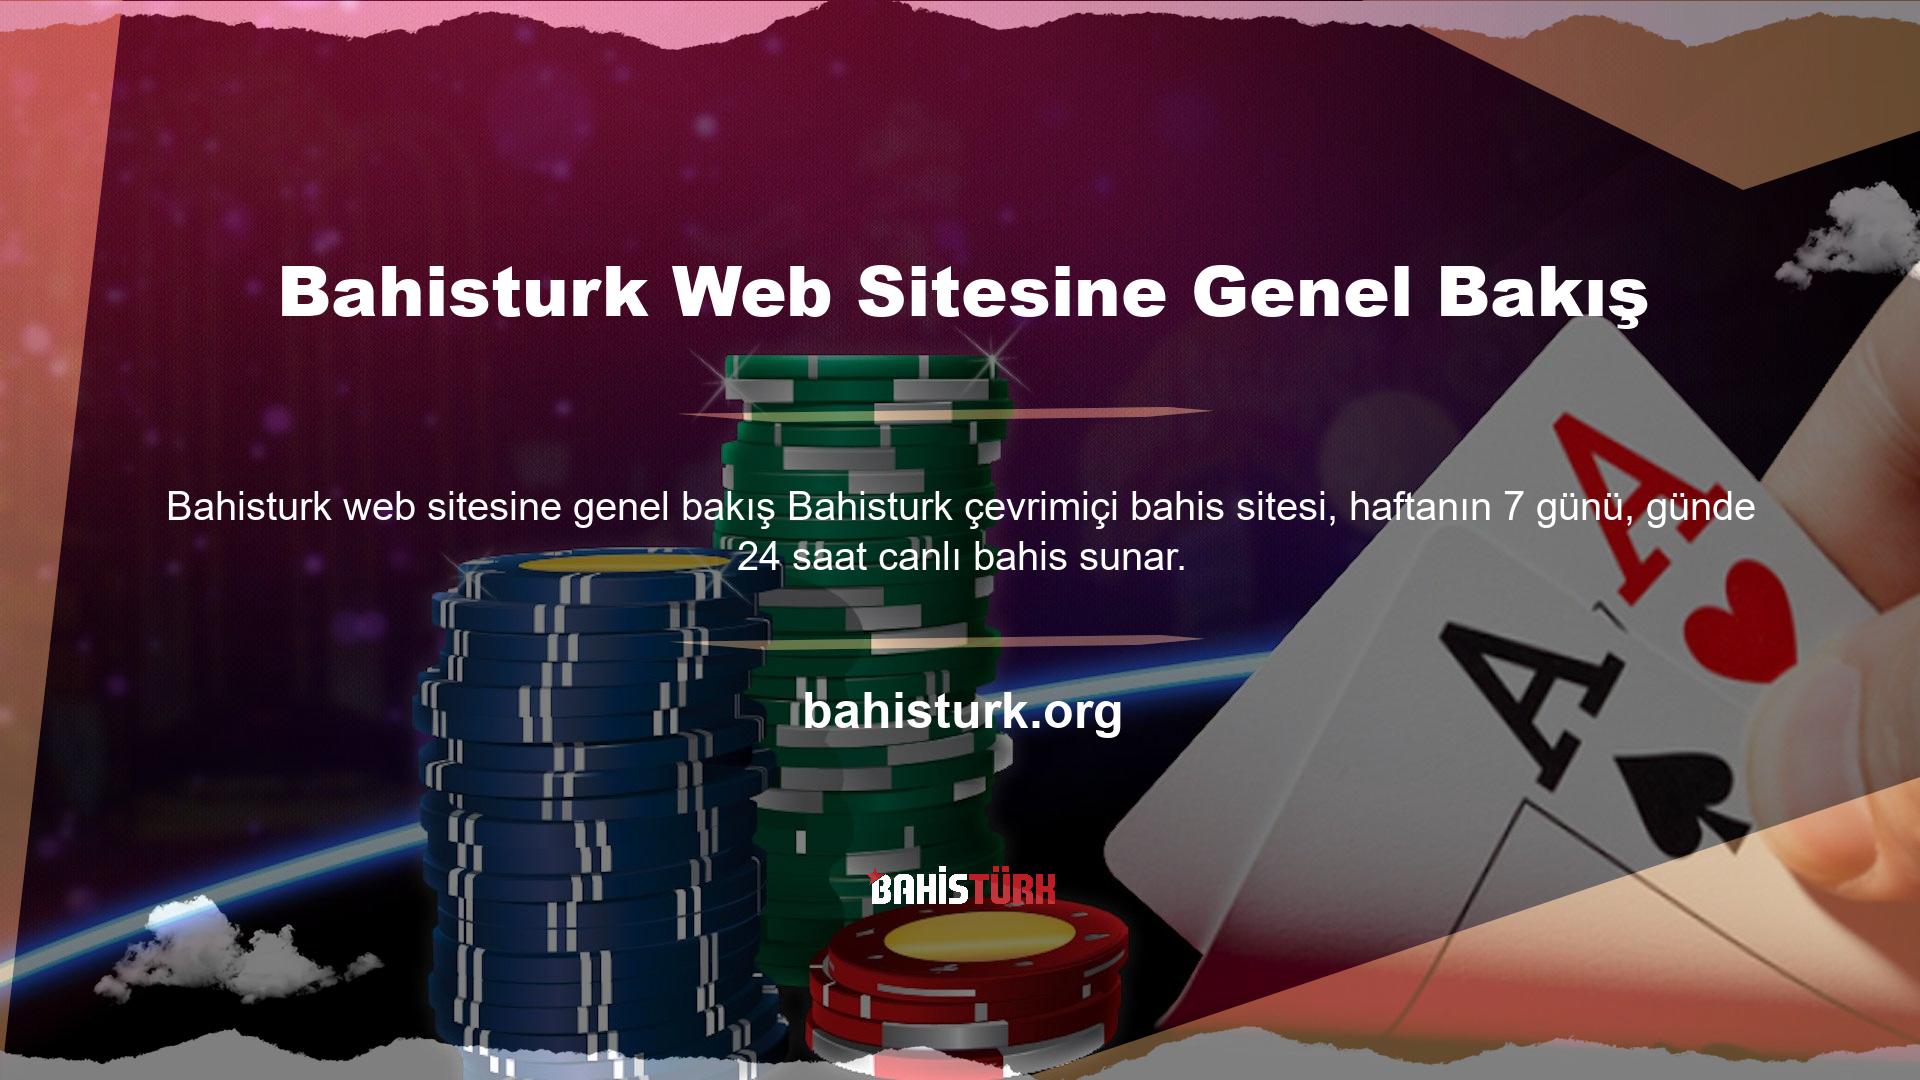 Müşteri memnuniyeti odaklı hizmetiyle Türk canlı bahis sektöründe adından söz ettiren Bahisturk online bahis sitesi, müşterilerine hem spor bahislerinde hem de popüler casinolarda oldukça cazip kazançlar elde etme fırsatı sunmaktadır